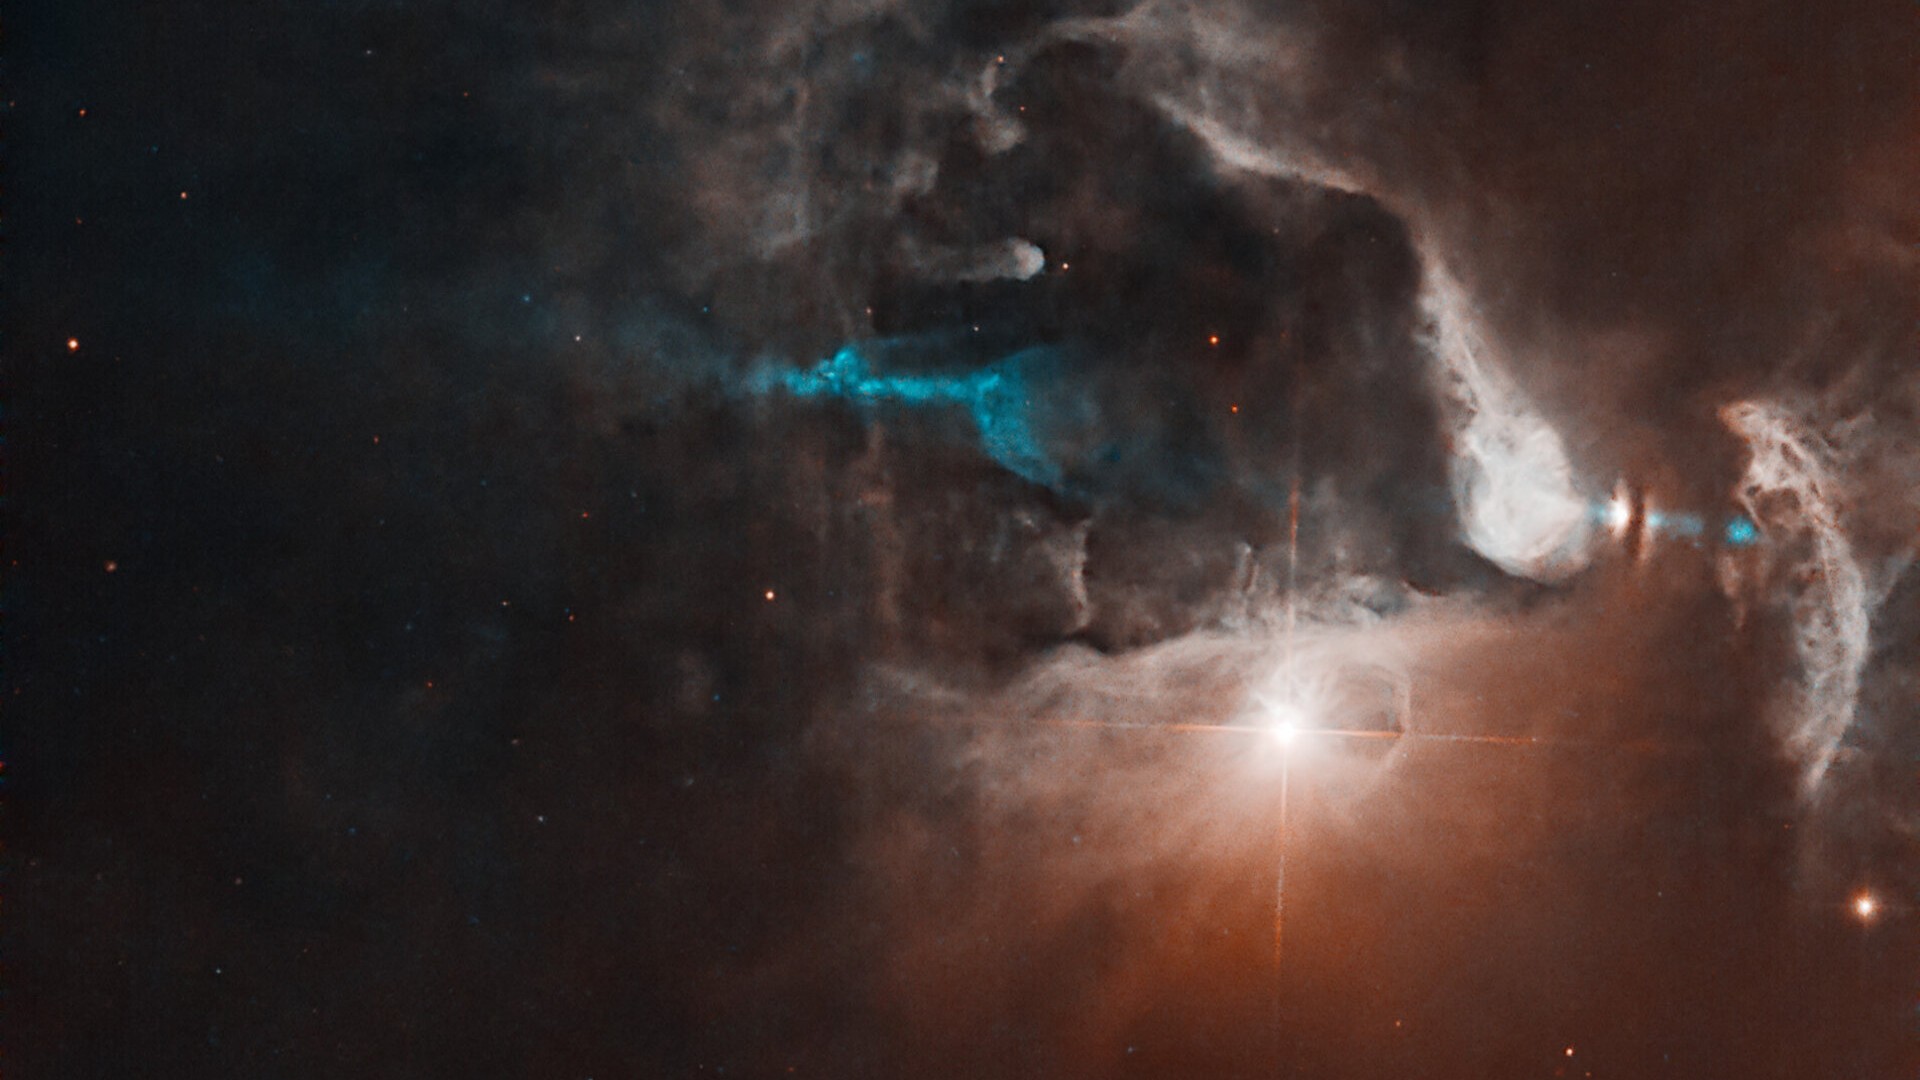 Jatos emergem do casulo de uma estrela recém-formada, cortando o gás e a poeira de uma nebulosa brilhante, nesta imagem. FS Tau é um sistema com diversas estrelas, especialmente FS Tau A, o objeto brilhante ao meio, e FS Tau B (Haro 6-5B), o objeto cintilante, na extrema direita, que está parcialmente obscurecido por uma faixa escura e vertical de poeira. O sistema tem apenas 2,8 milhões de anos, o que é muito jovem para um sistema estelar. FS Tau faz parte da região Taurus-Auriga, uma coleção de nuvens moleculares escuras que abrigam numerosas estrelas jovens e recém-formadas, a cerca de 450 anos-luz de distância, entre a Constelação de Touro e a Constelação de Auriga (“O Cocheiro”)